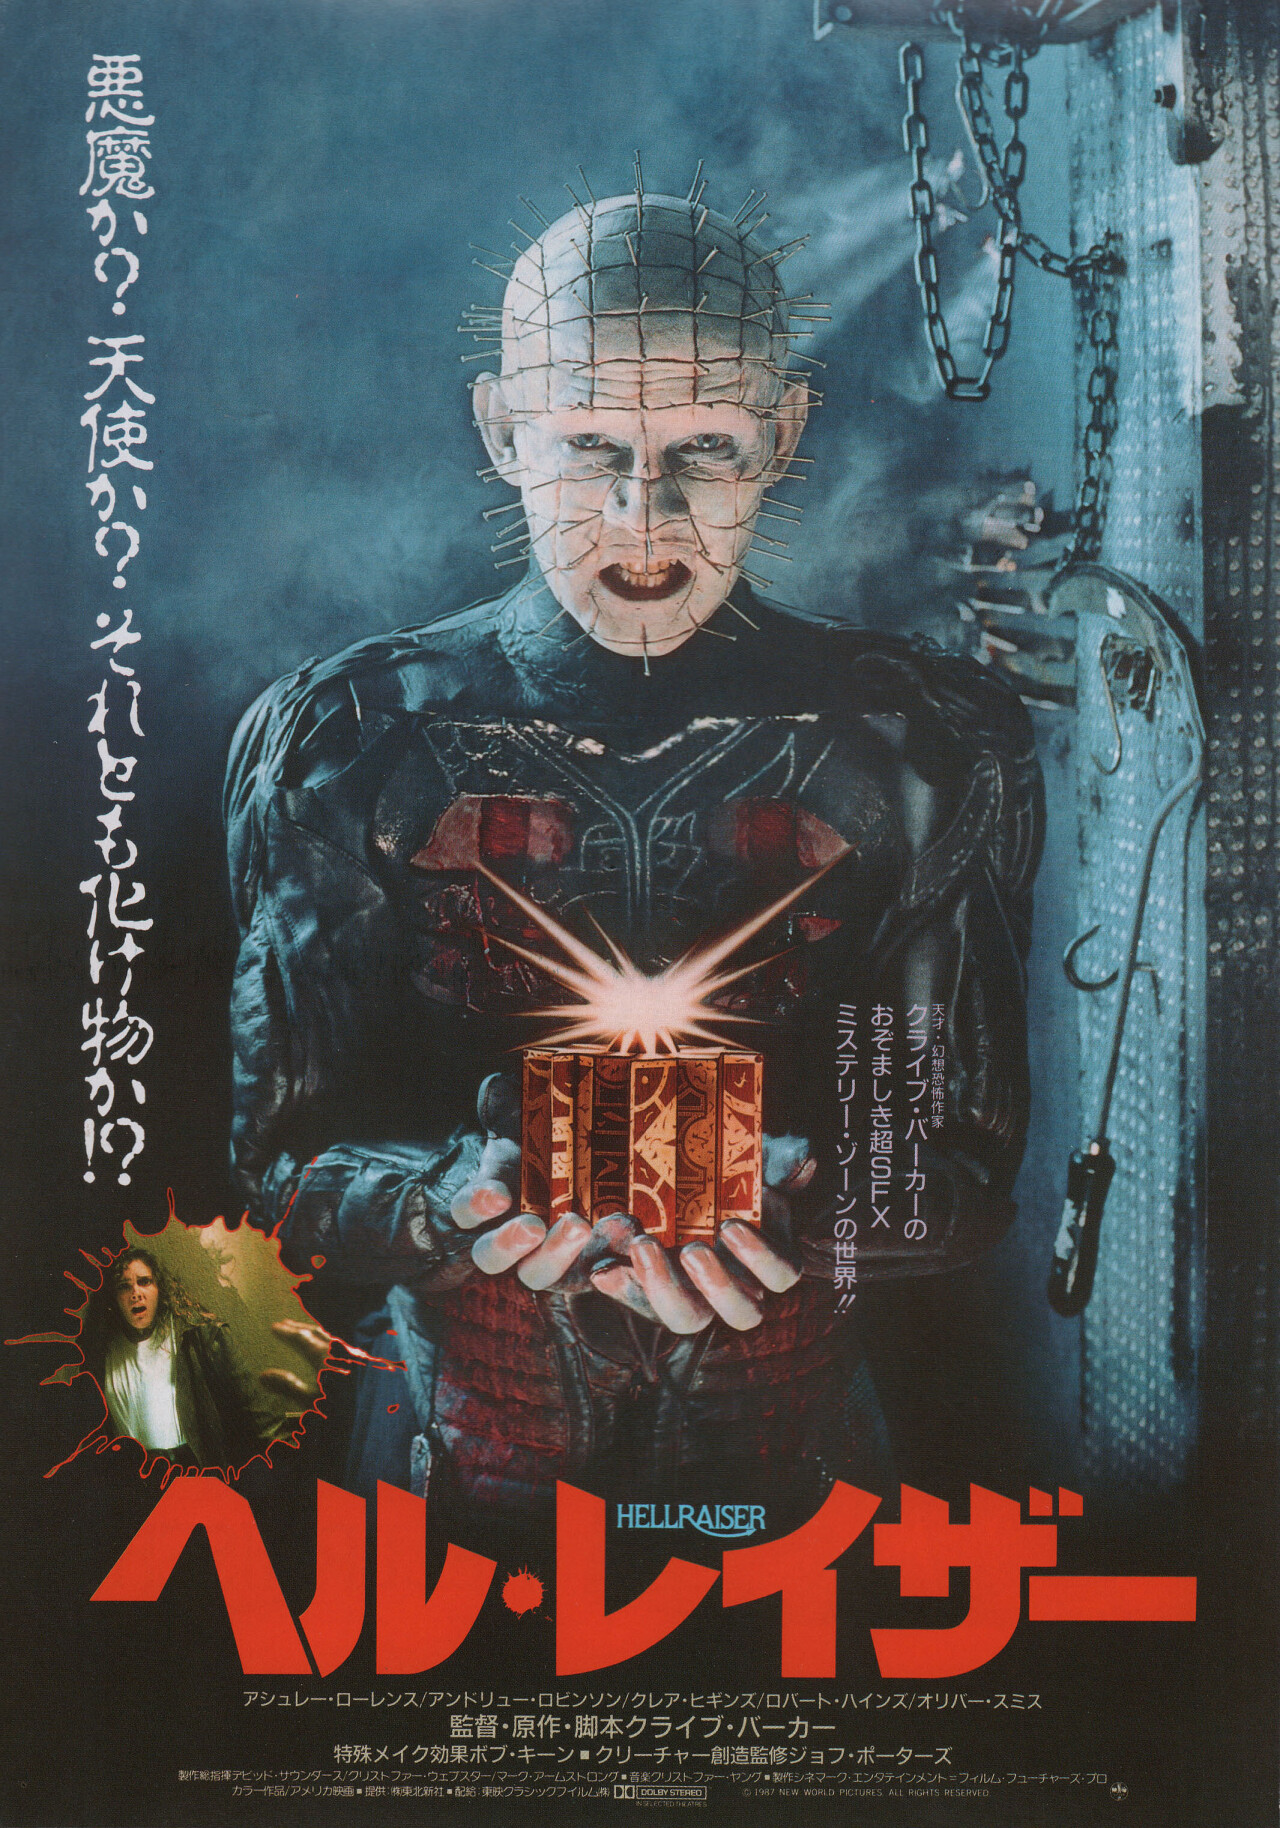 Восставший из ада (Hellraiser, 1987), режиссёр Клайв Баркер, японский постер к фильму (ужасы, 1987 год)